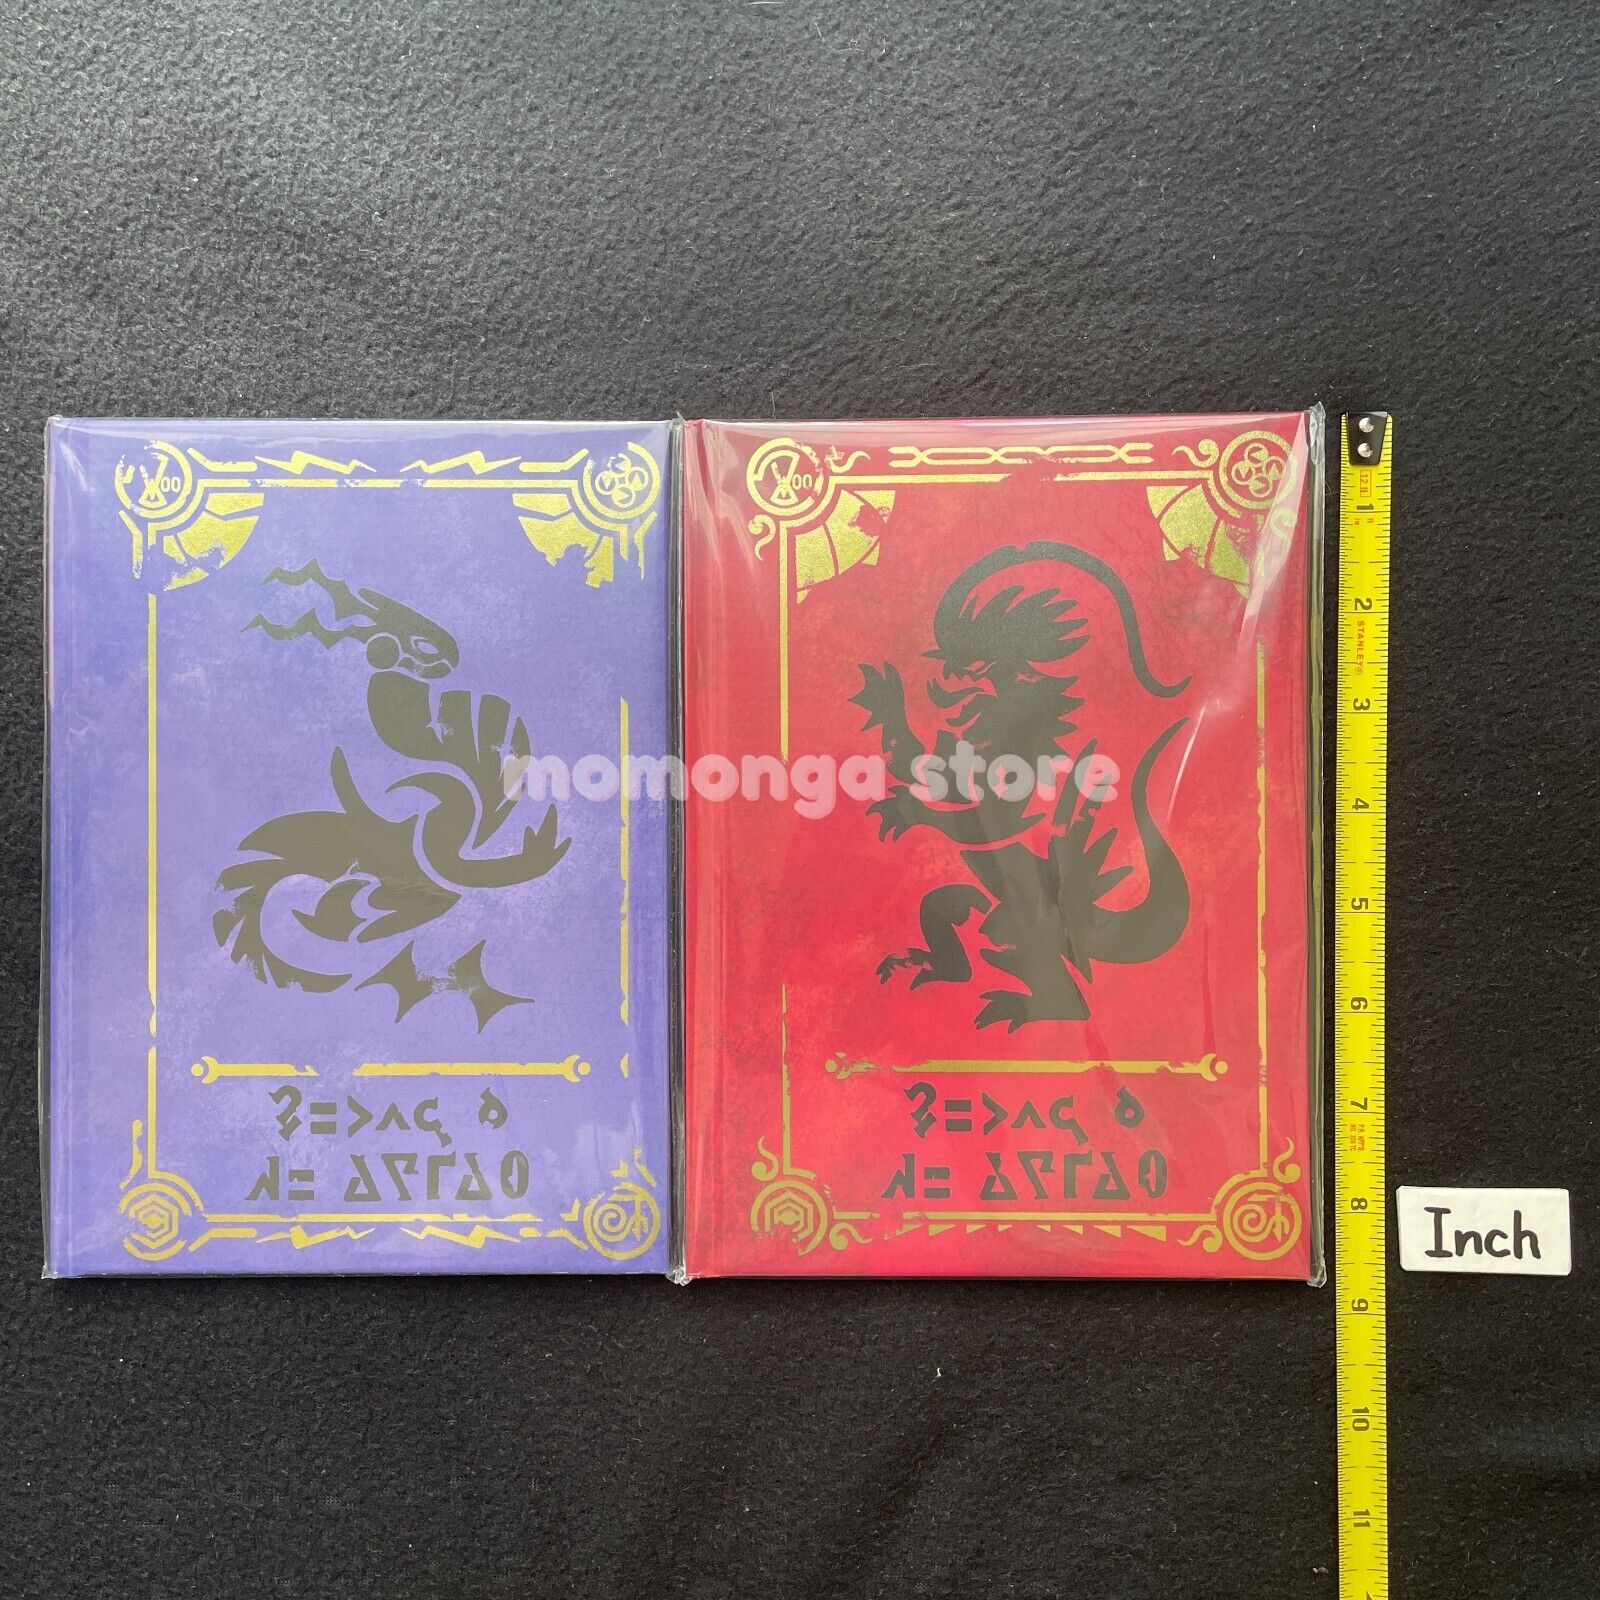 Sealed Pokemon Scarlet & Violet Art books + Pokemon Center Limited Card Set Pokémon Center Does not apply - фотография #3